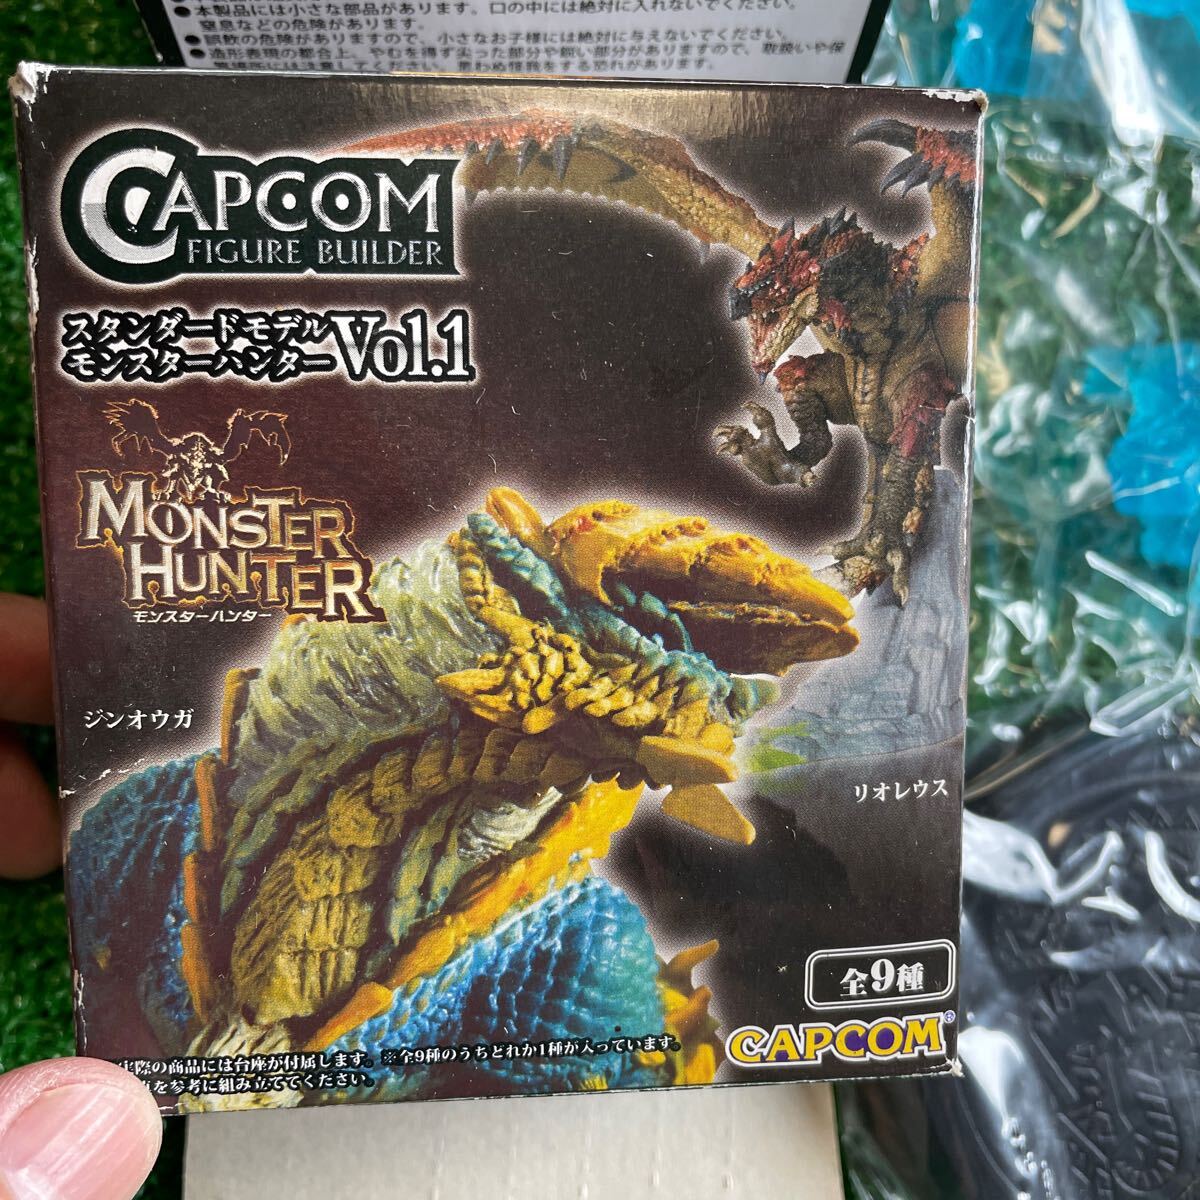 CAPCOM Monstar Hunter Vol.1 стандартный модель Gin ouga прозрачный ver. не продается shengao Len 